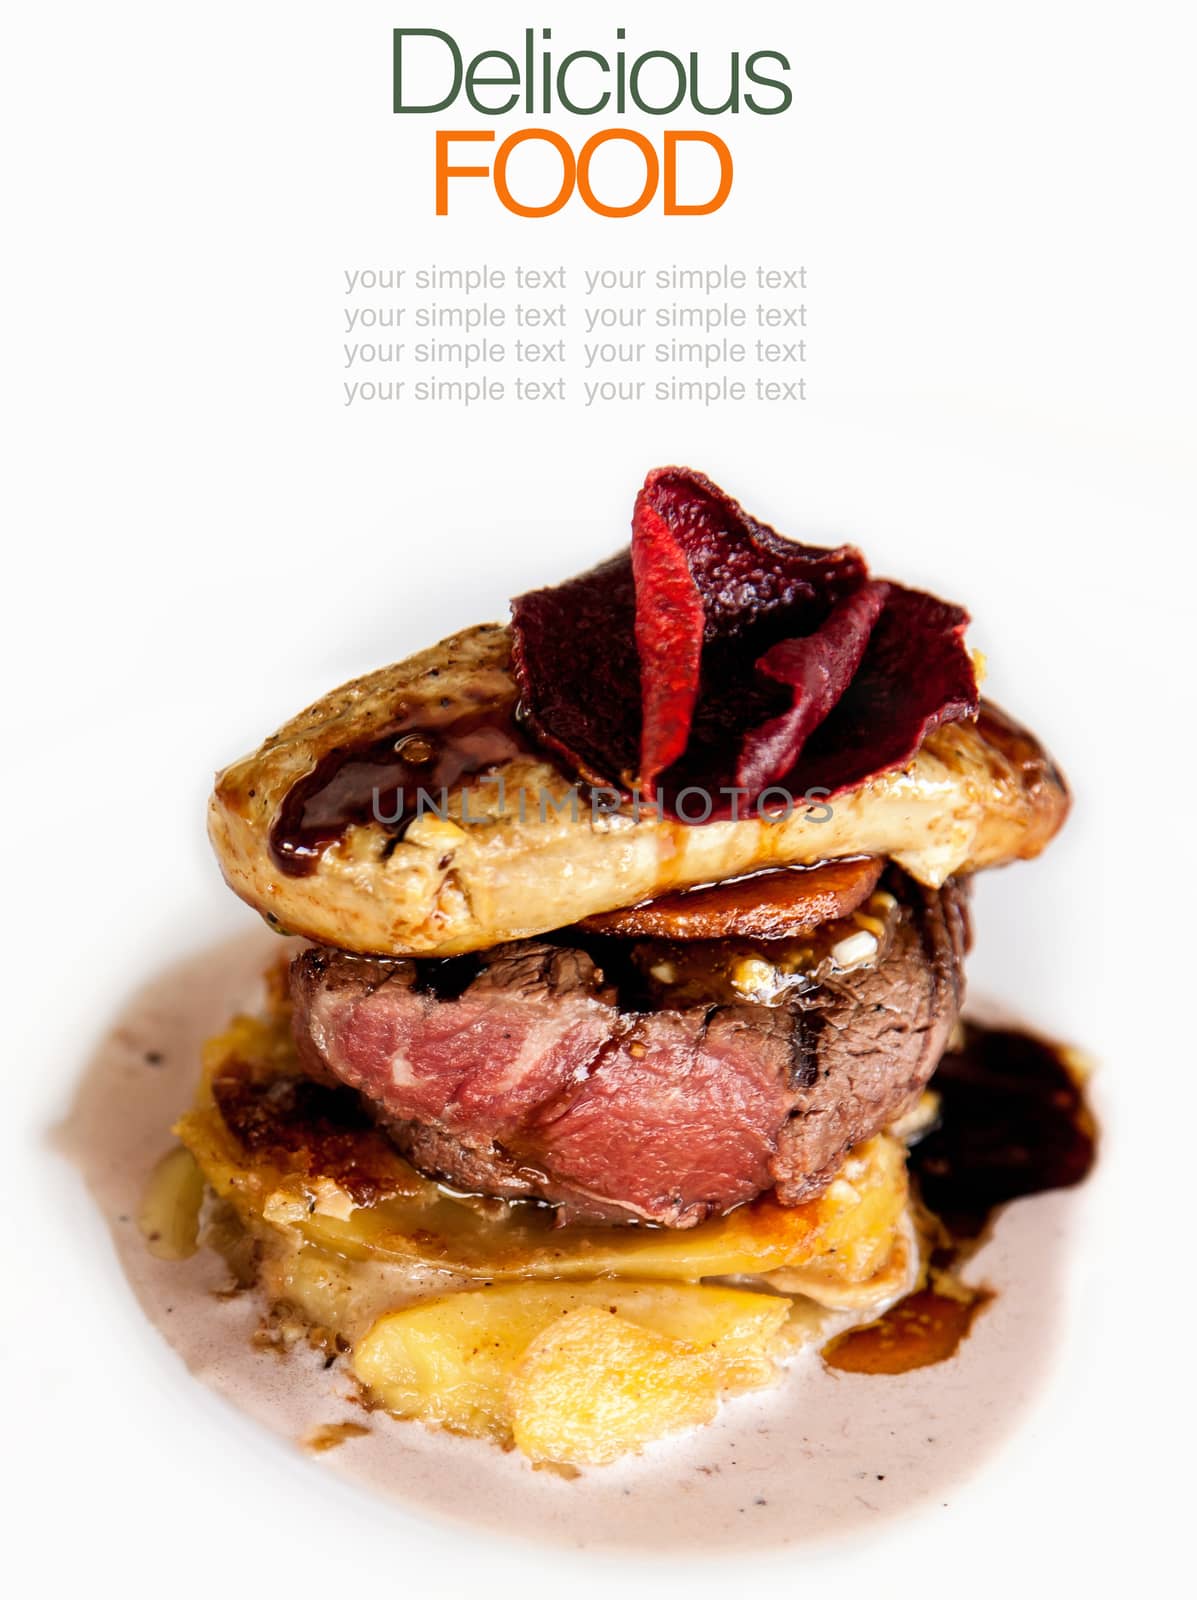 Australian premium fillet tenderloin steak with Fried foie gras. by kerdkanno